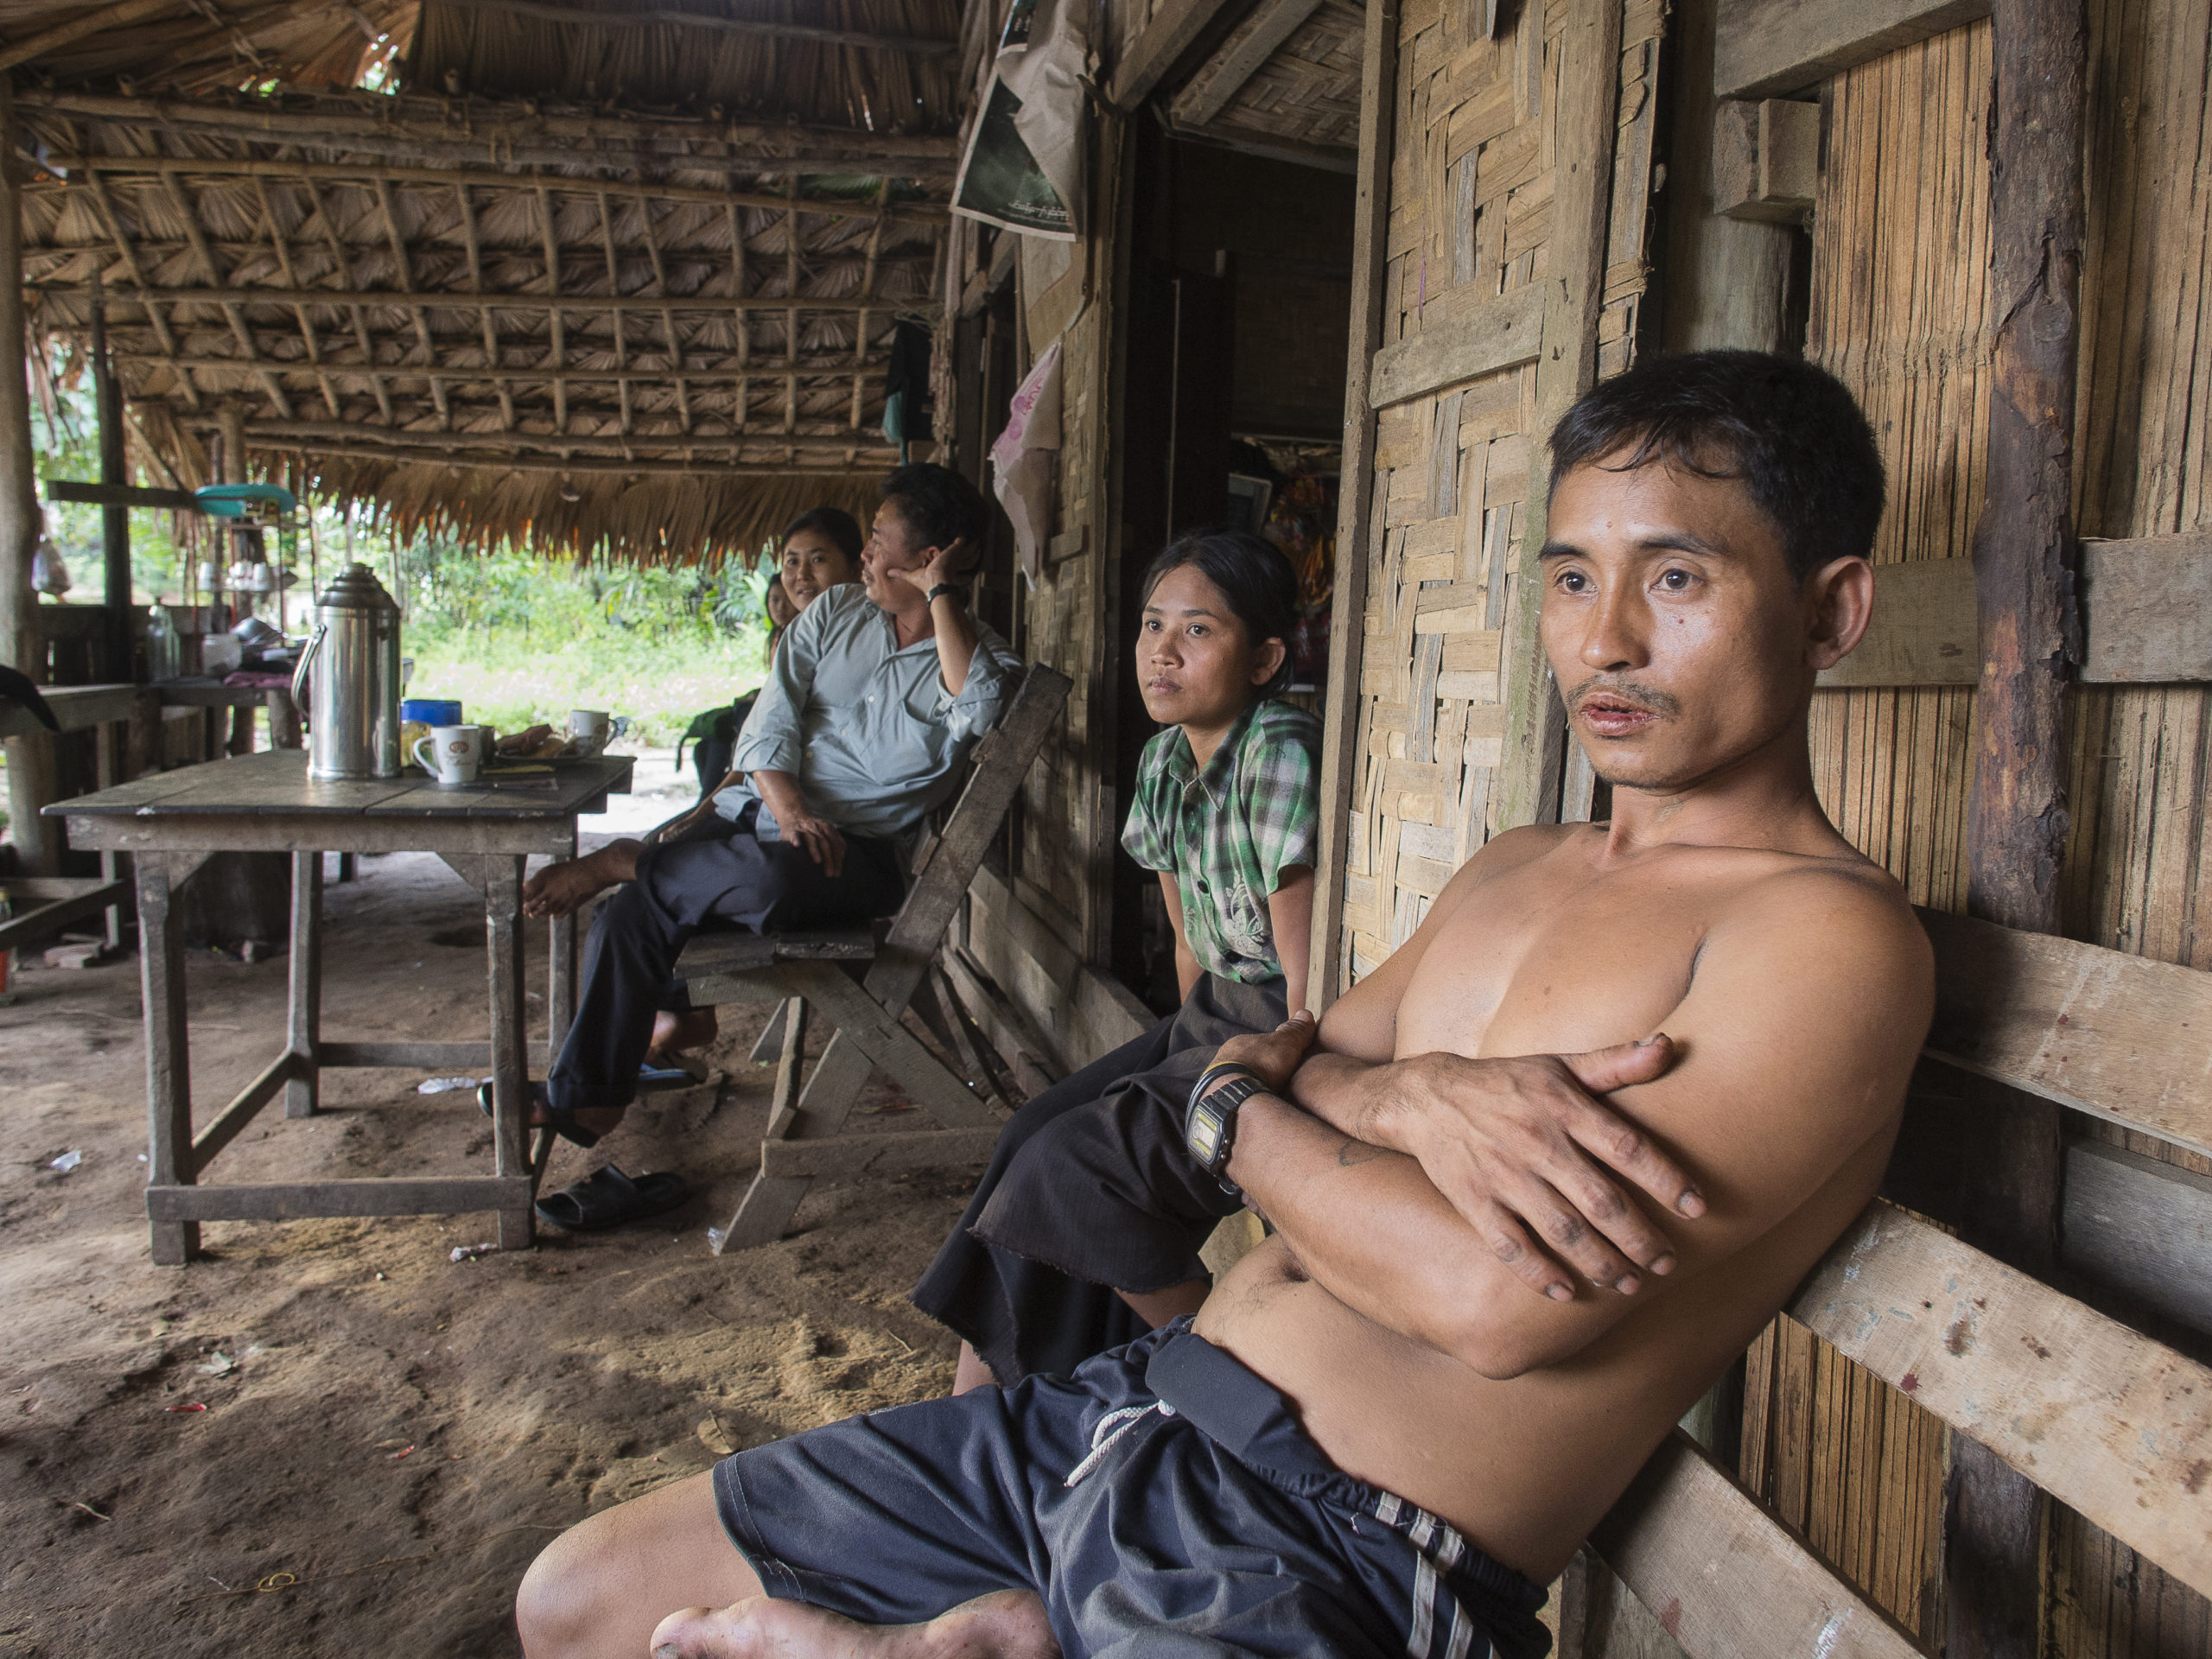 Luottamuksen puute on yksi Myanmarin orastavan rauhan ongelmakohdista. Saw Teh Teh ei luota tulitauon kestävyyteen, vaikka elämä sen myötä helpottuikin. Teepuodissa asioivat sotilaat muistuttavat vanhoista kaunoista päivittäin.